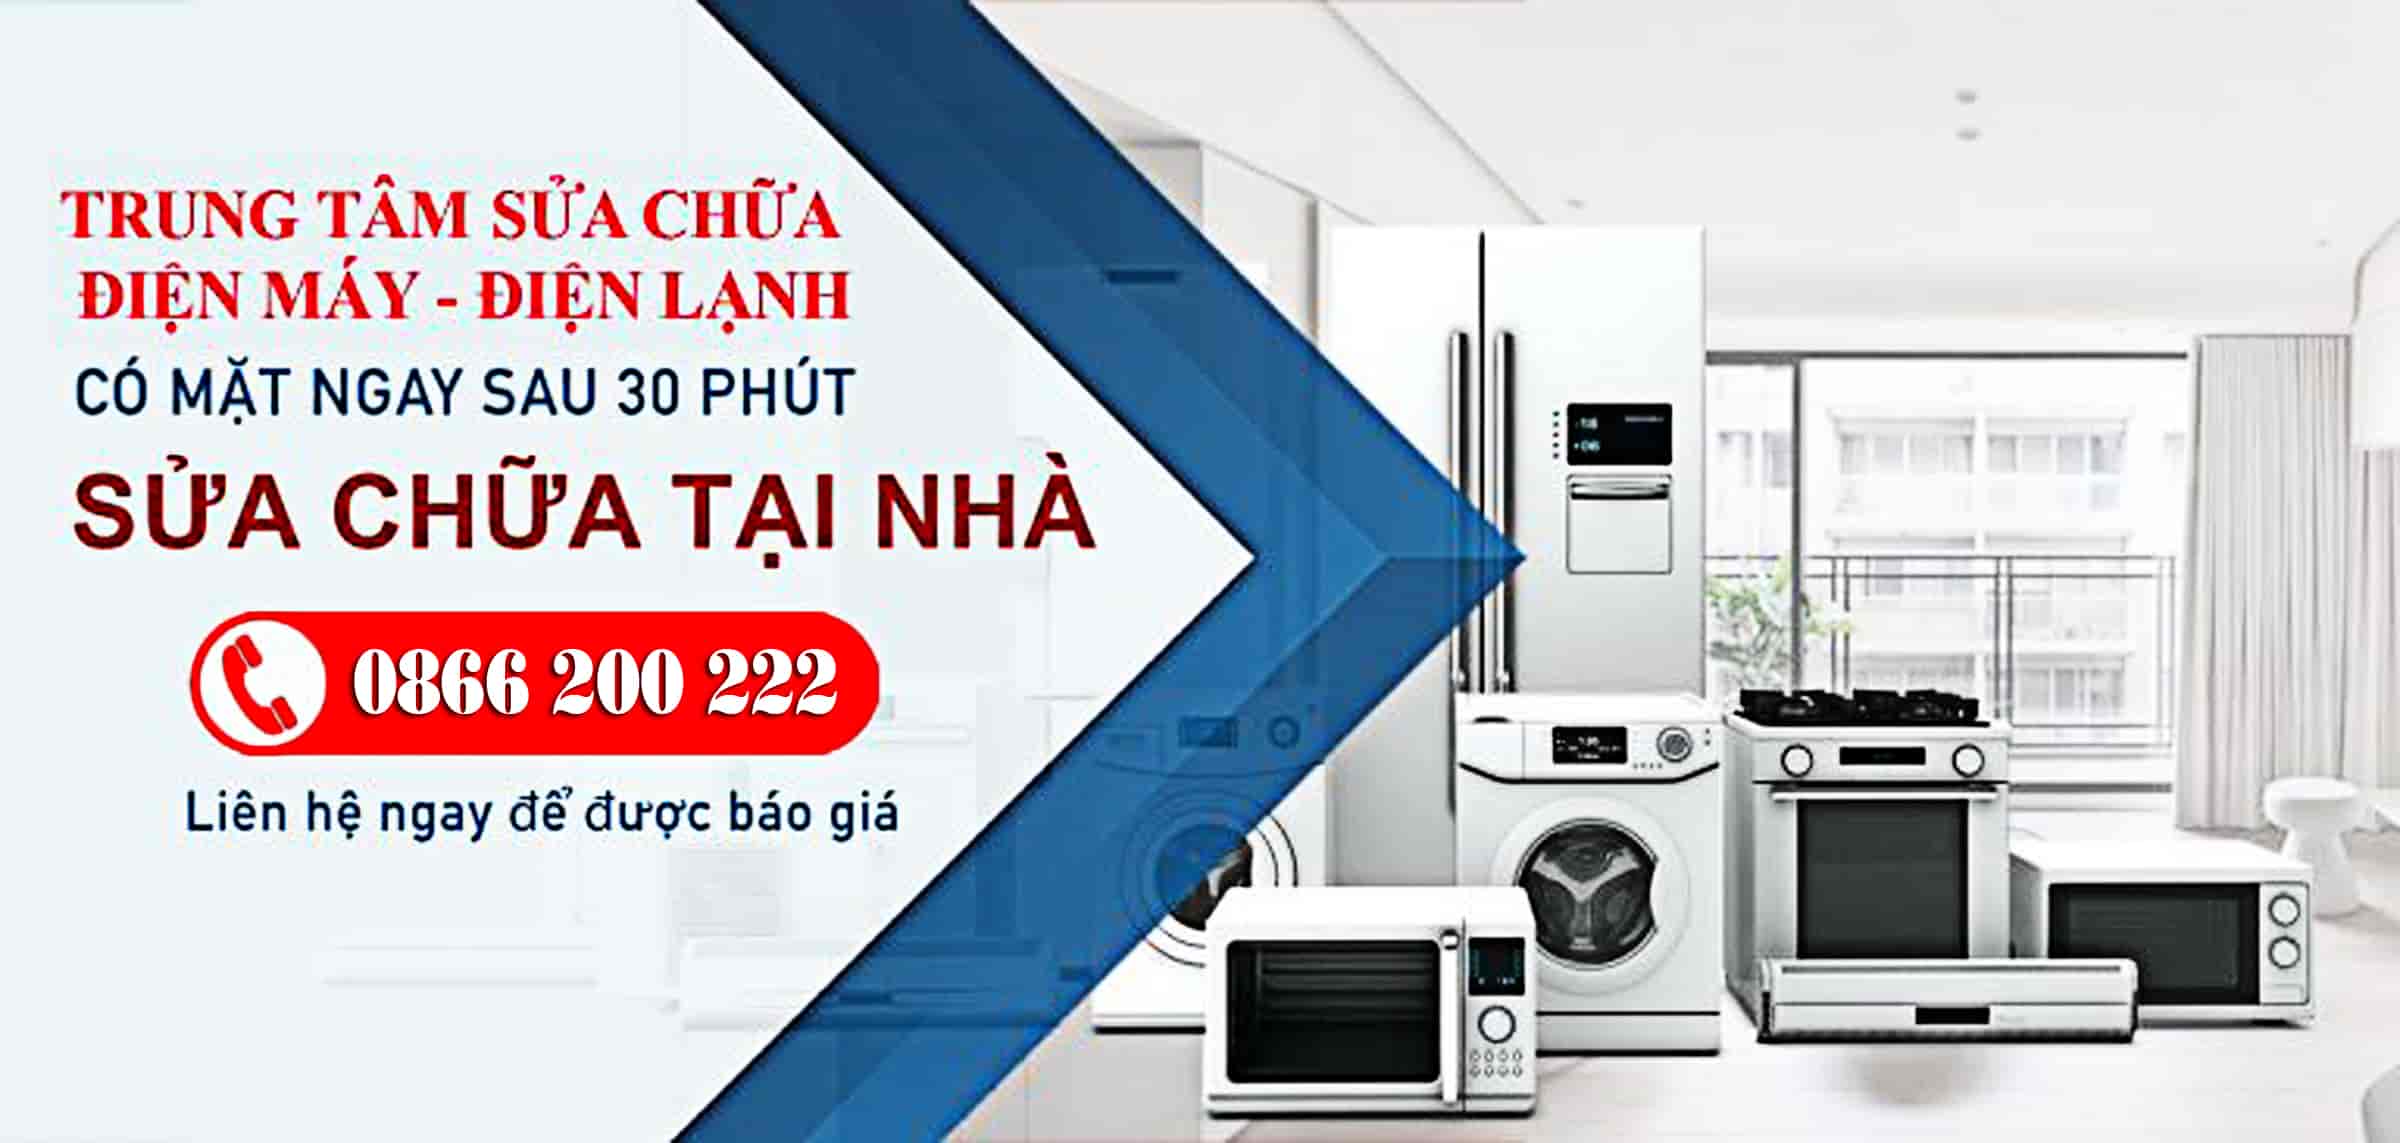 Dịch vụ sửa chữa đồ Điện tử Điện lạnh tại nhà nhanh chong uy tín chất lượng ở Hà Nội